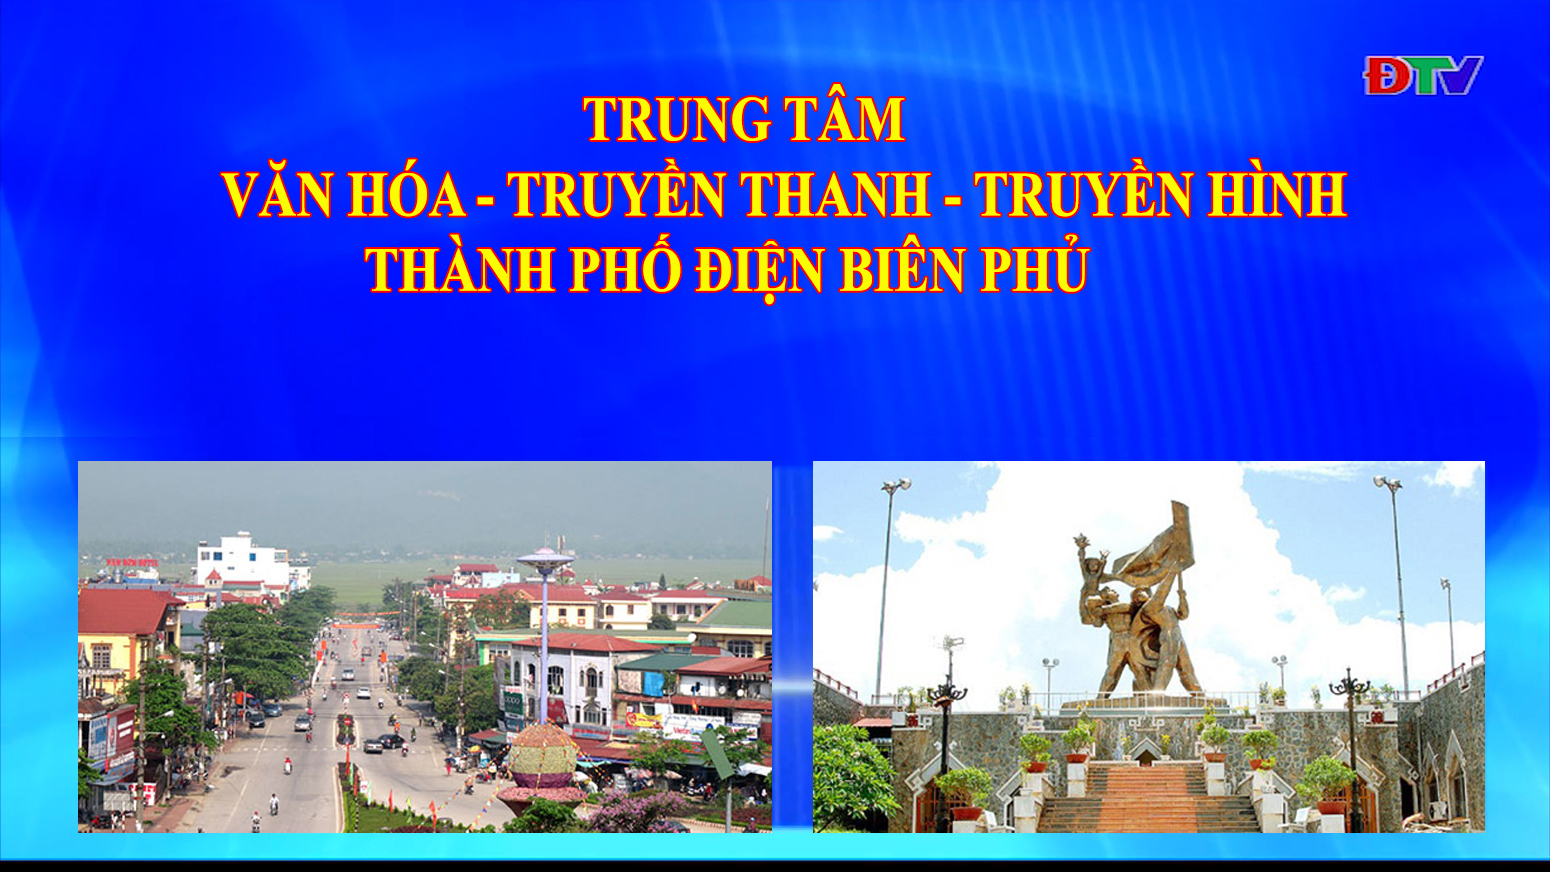 Trung tâm VH-TTTH thành phố Điện Biên Phủ (Ngày 6-9-2022)